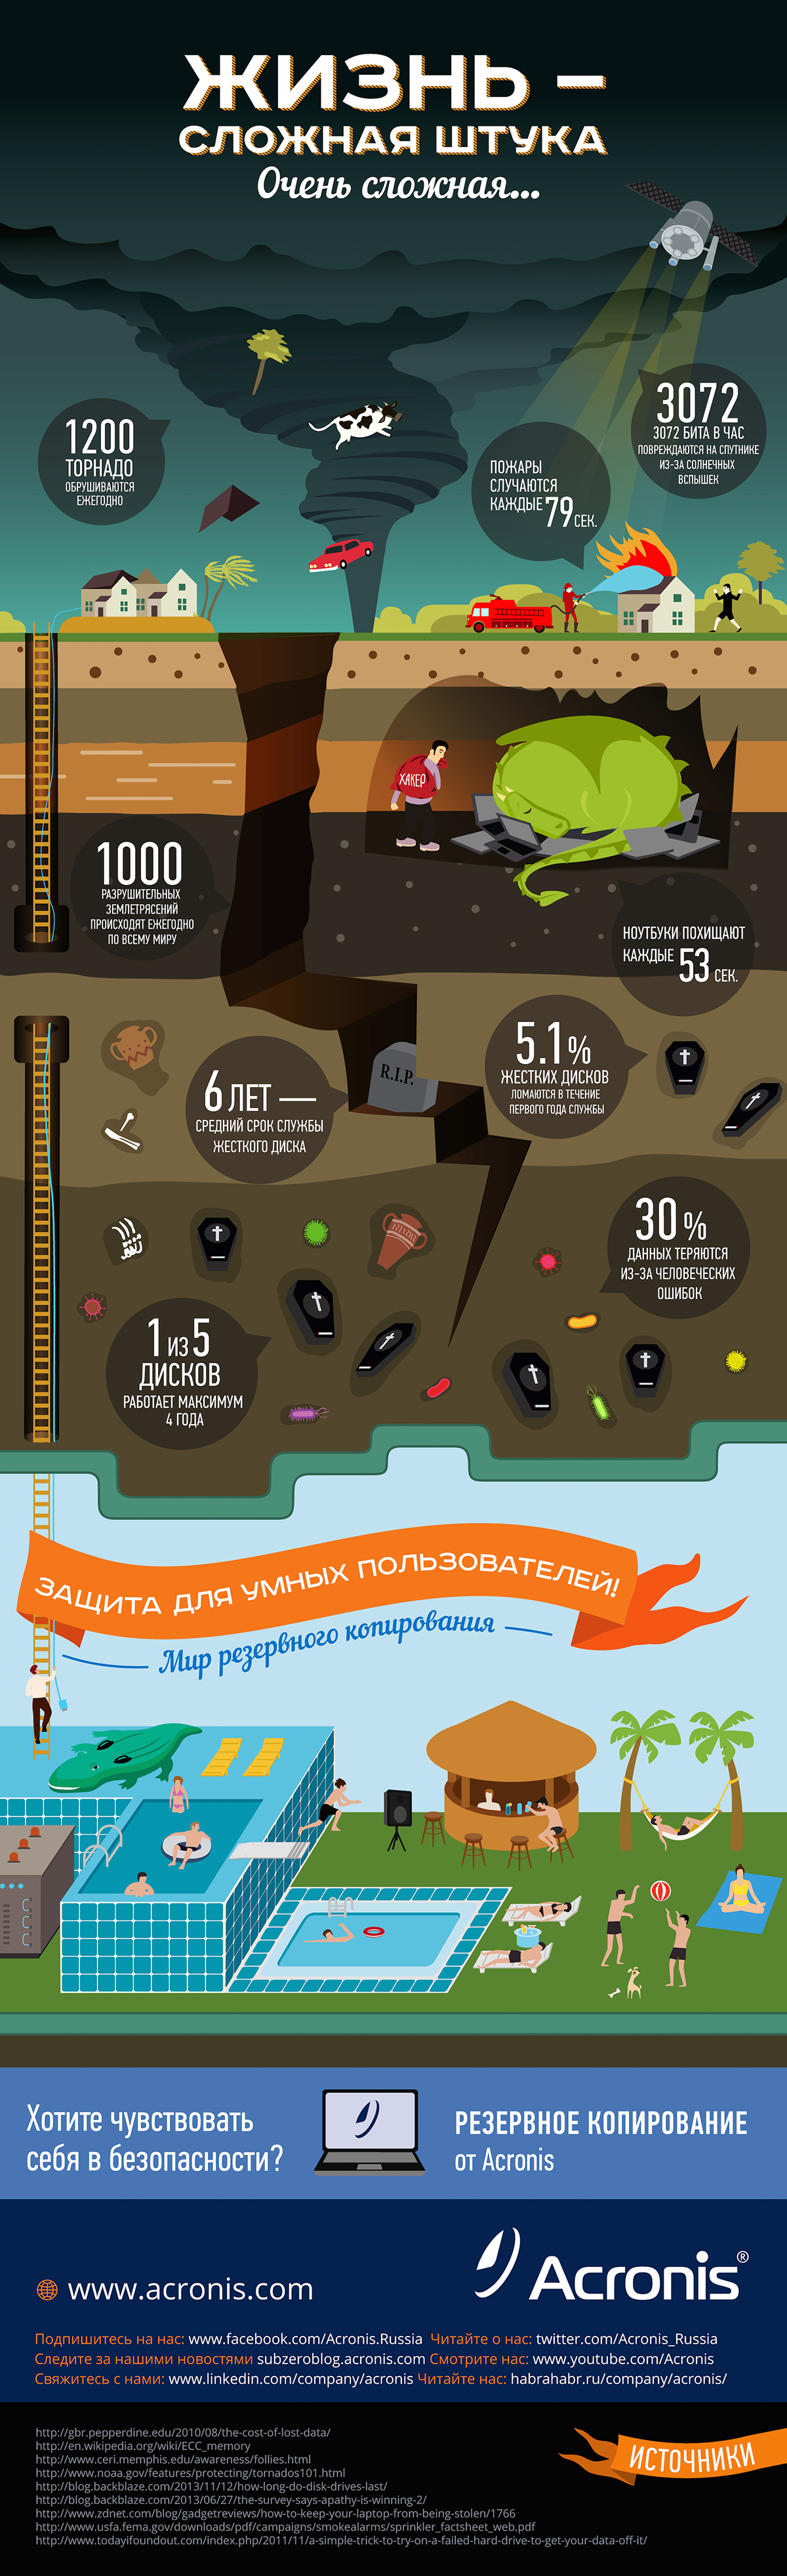 infographic tornado dragon Pool swimming pool backup life infographics acronis hard hard life